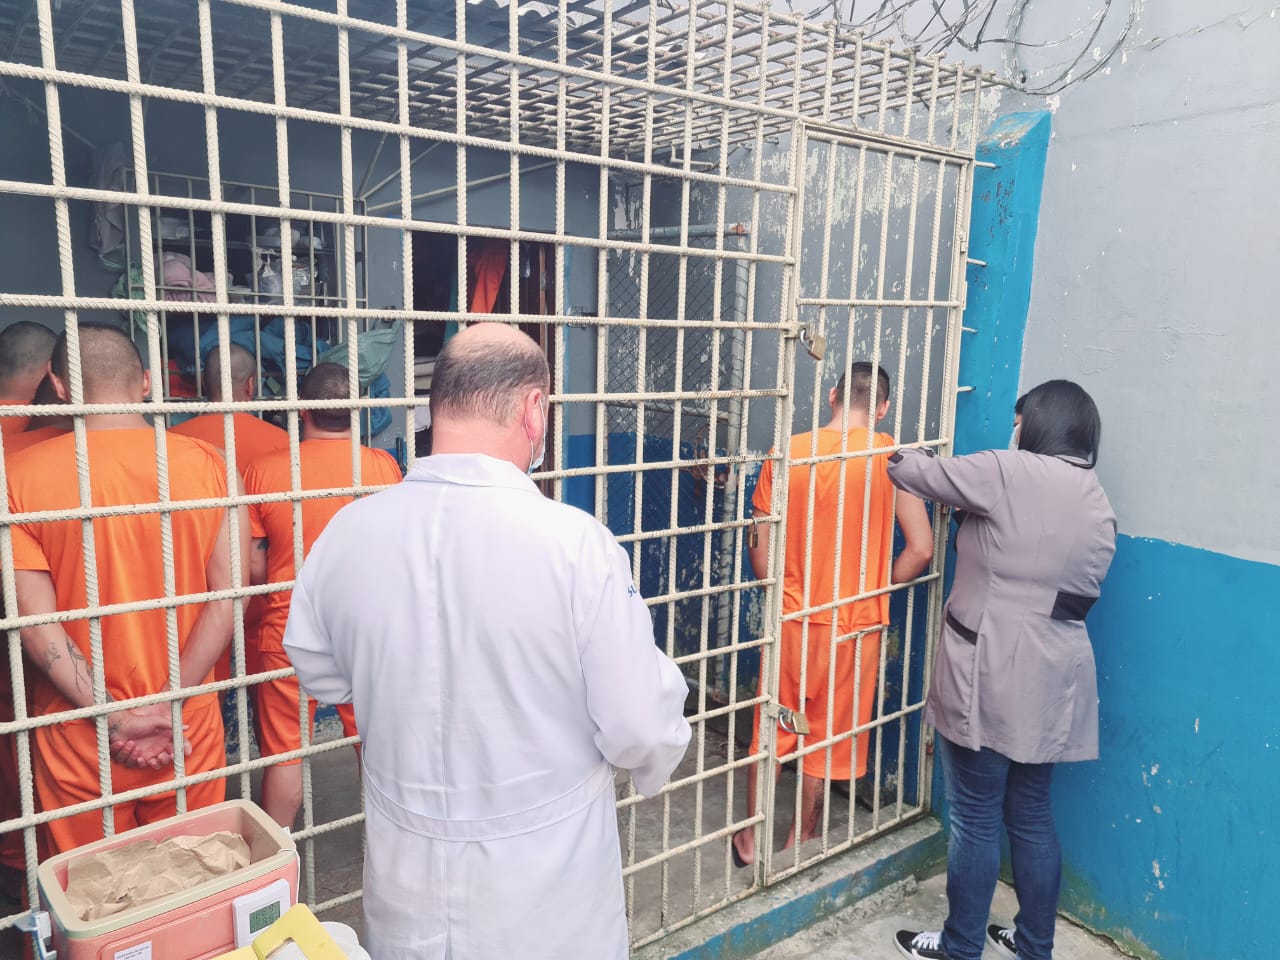 99 presos da Cadeia Pública de Castro receberam a 4ª dose da vacina contra a Covid-19